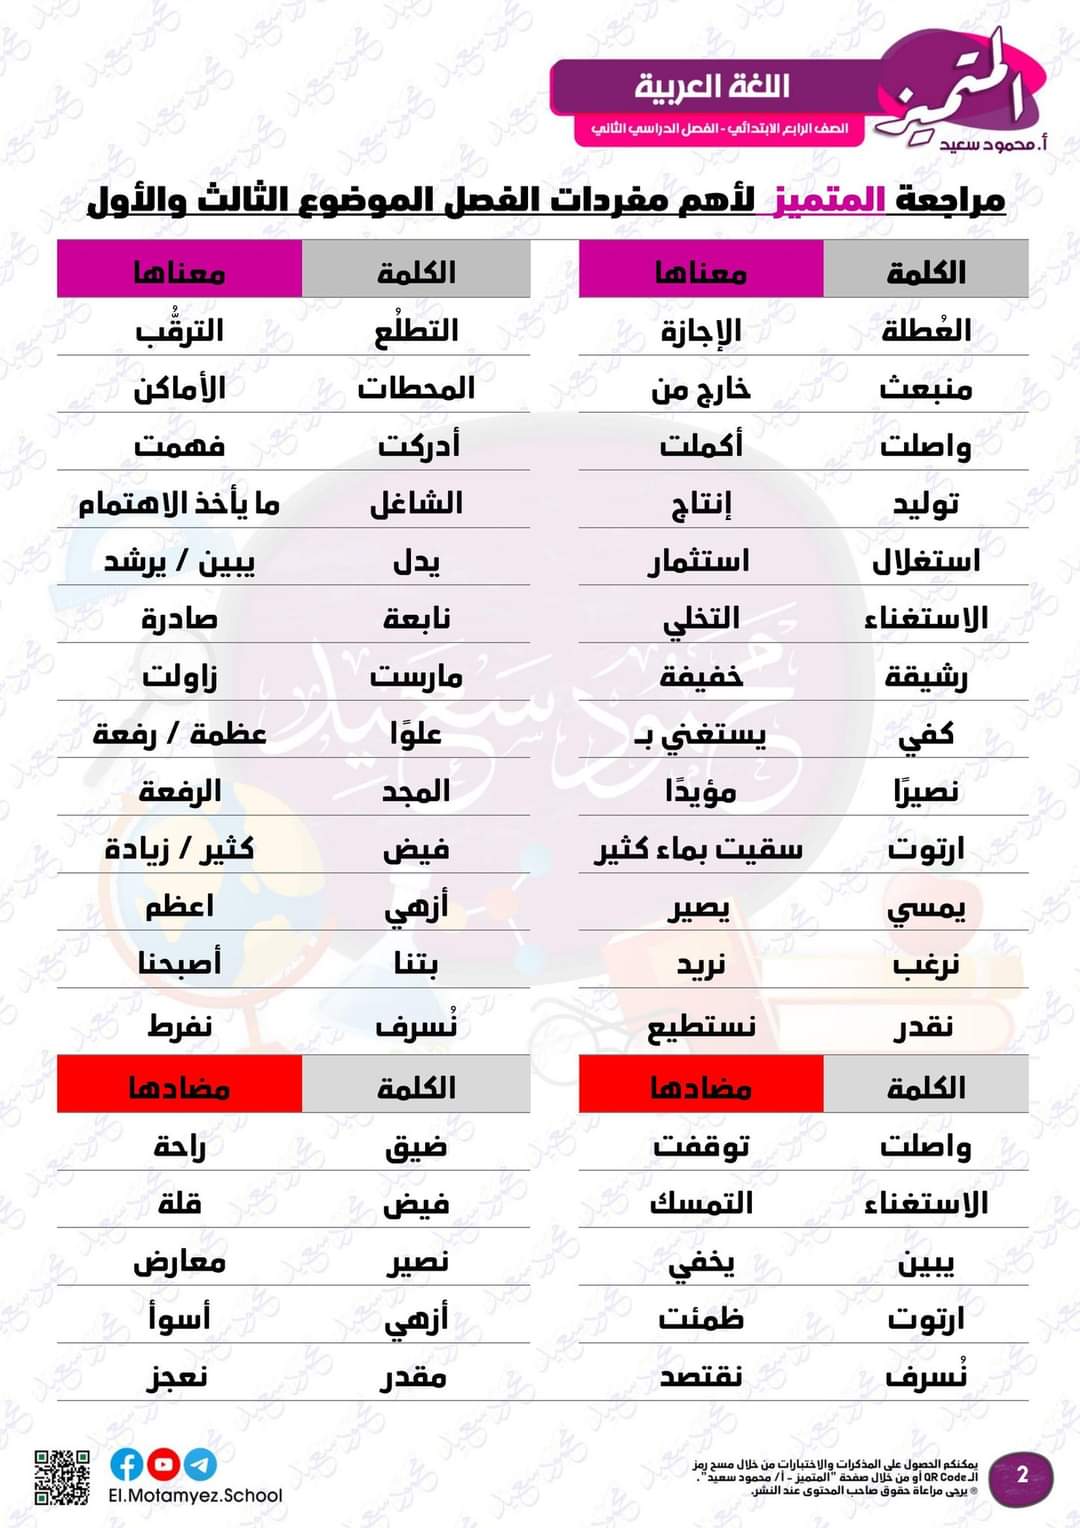 مراجعة المتميز مقرر مارس لغة عربية الصف الرابع الابتدائي - تحميل مذكرات المتميز